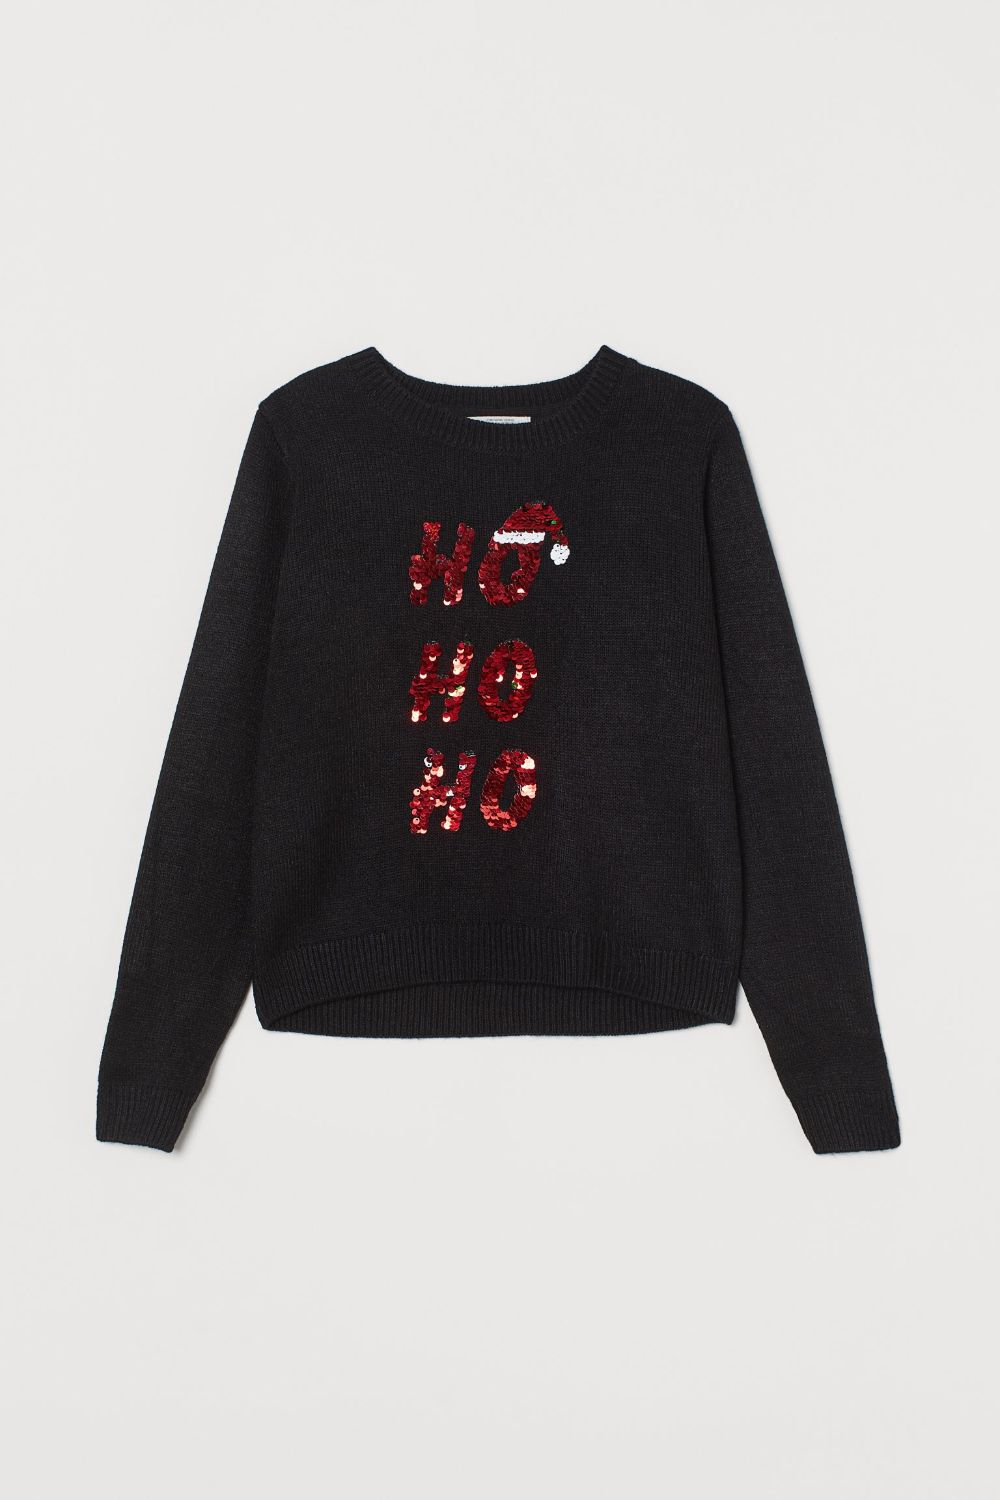 Dječji ružni božićni puloveri zima 2020